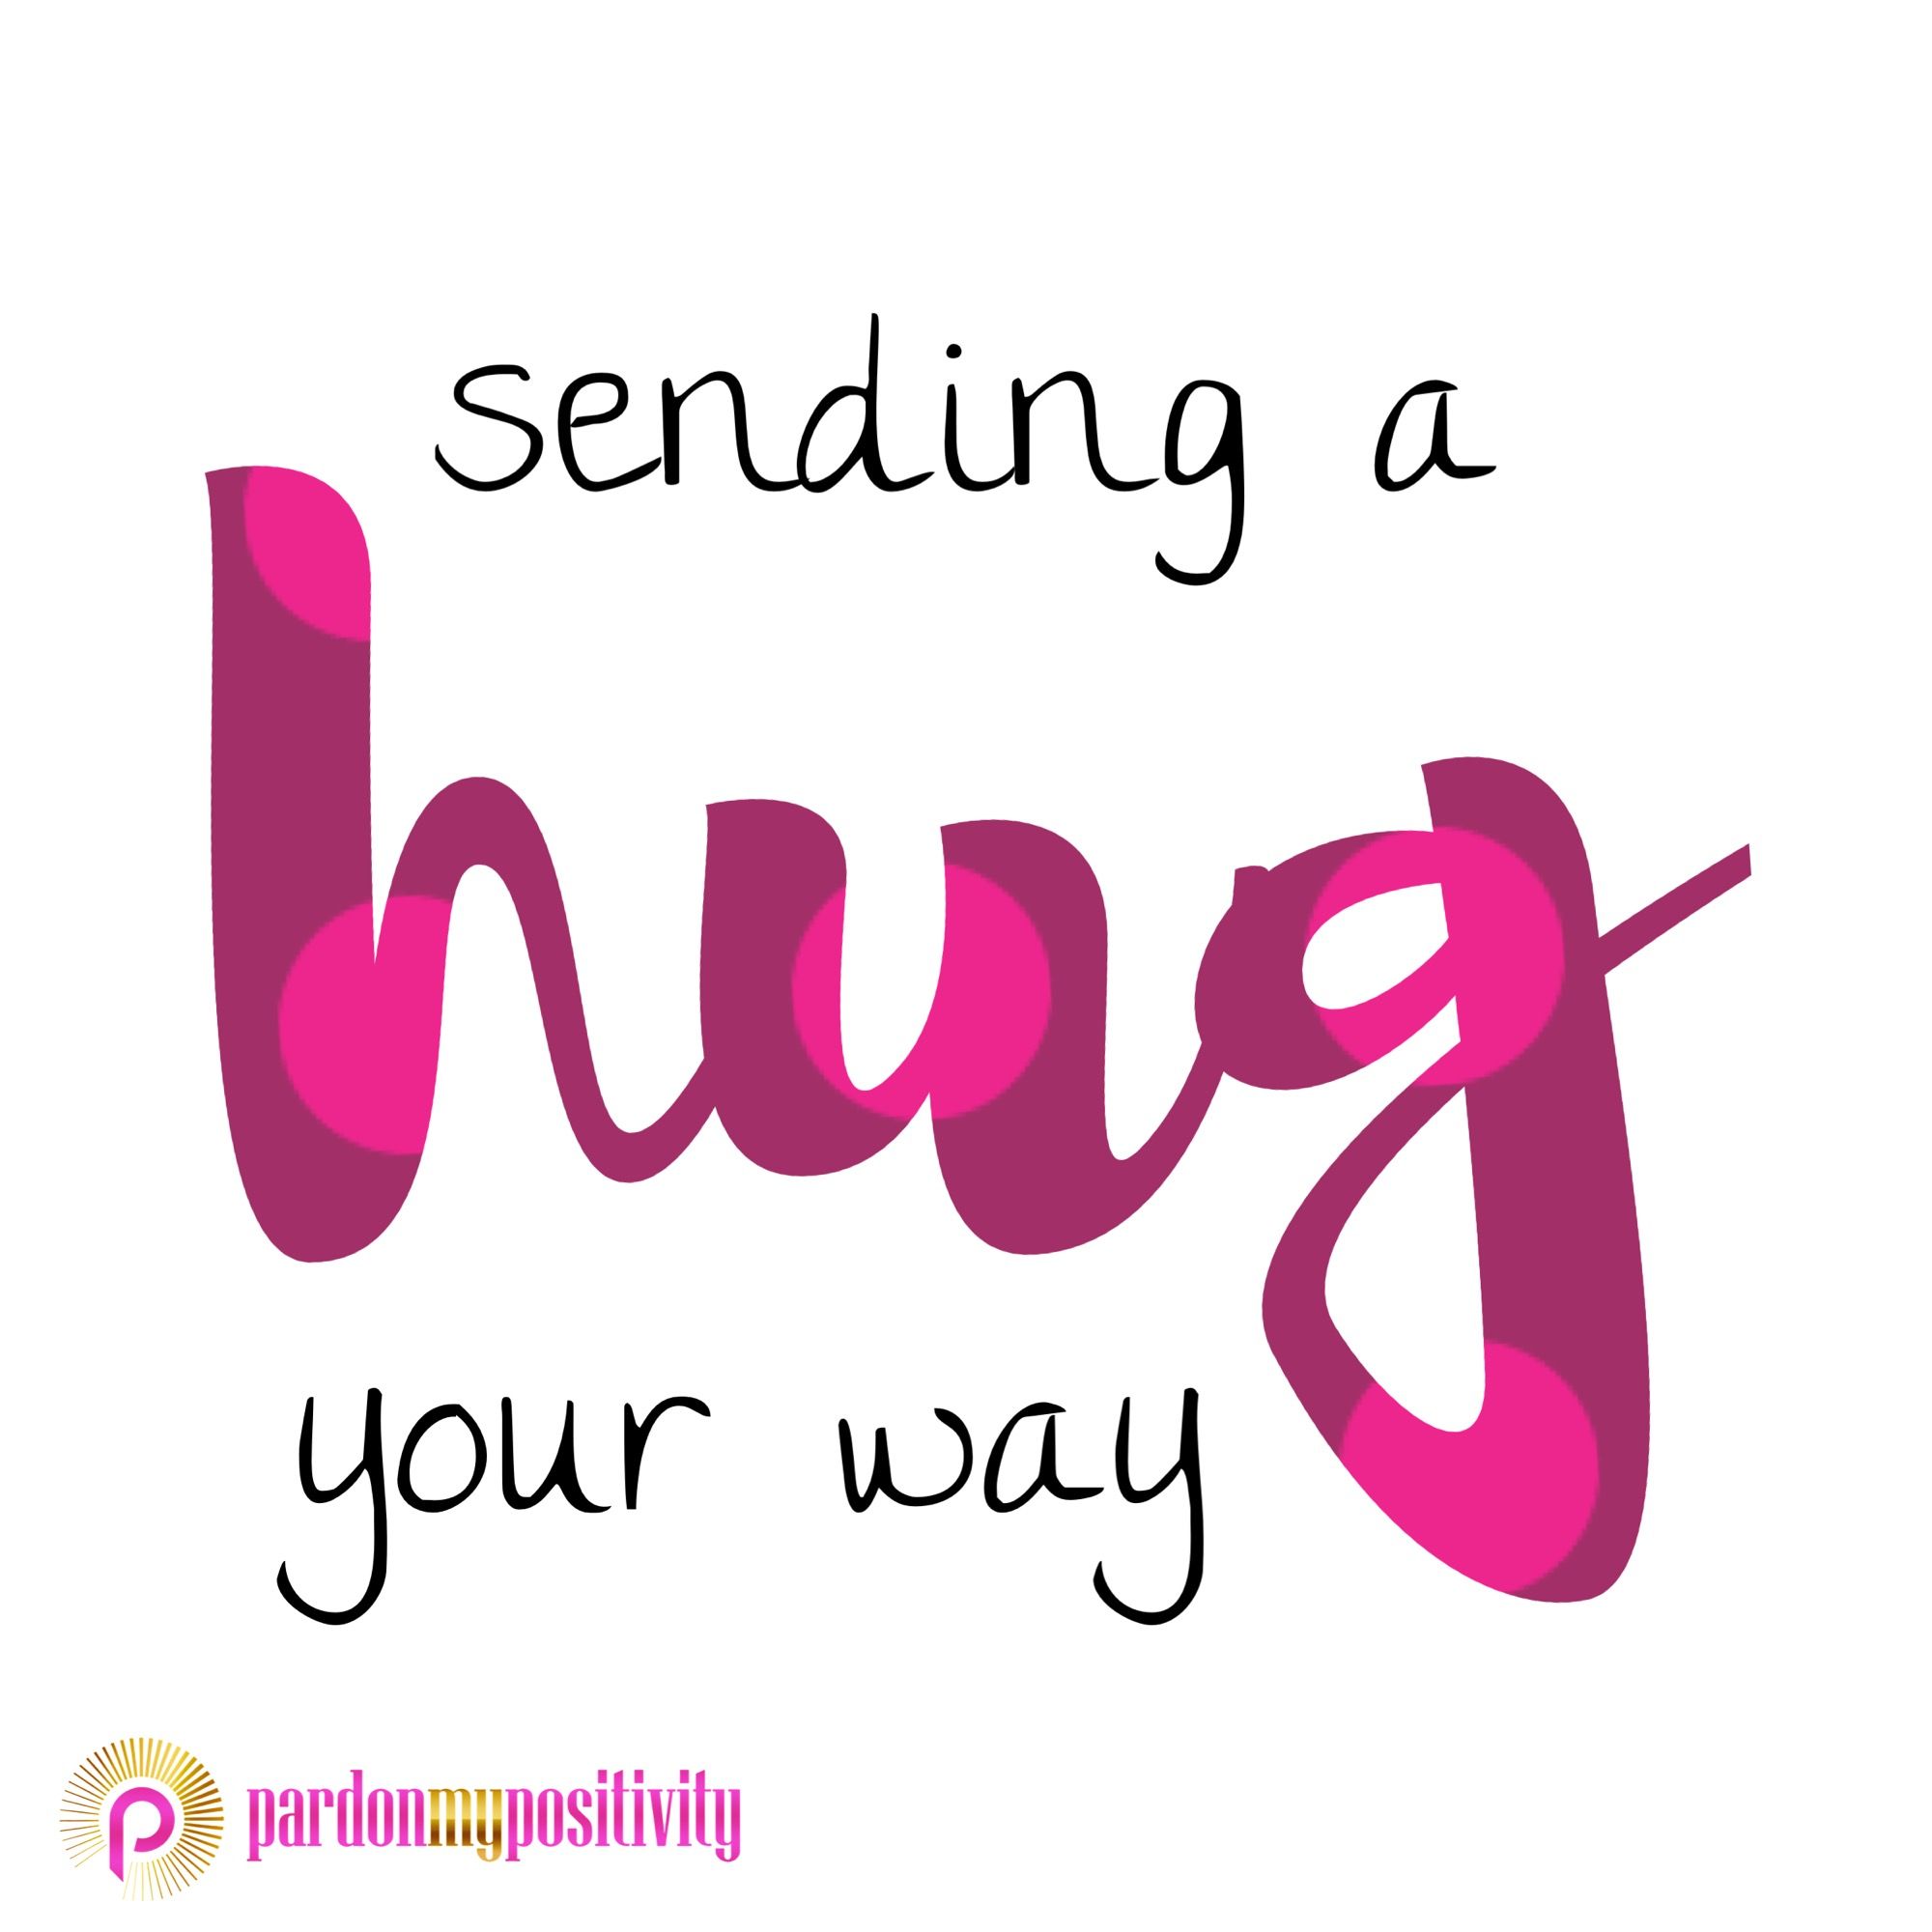 Sending a HUG your way! #hugday #nationalhuggingday #hug #hugs ...